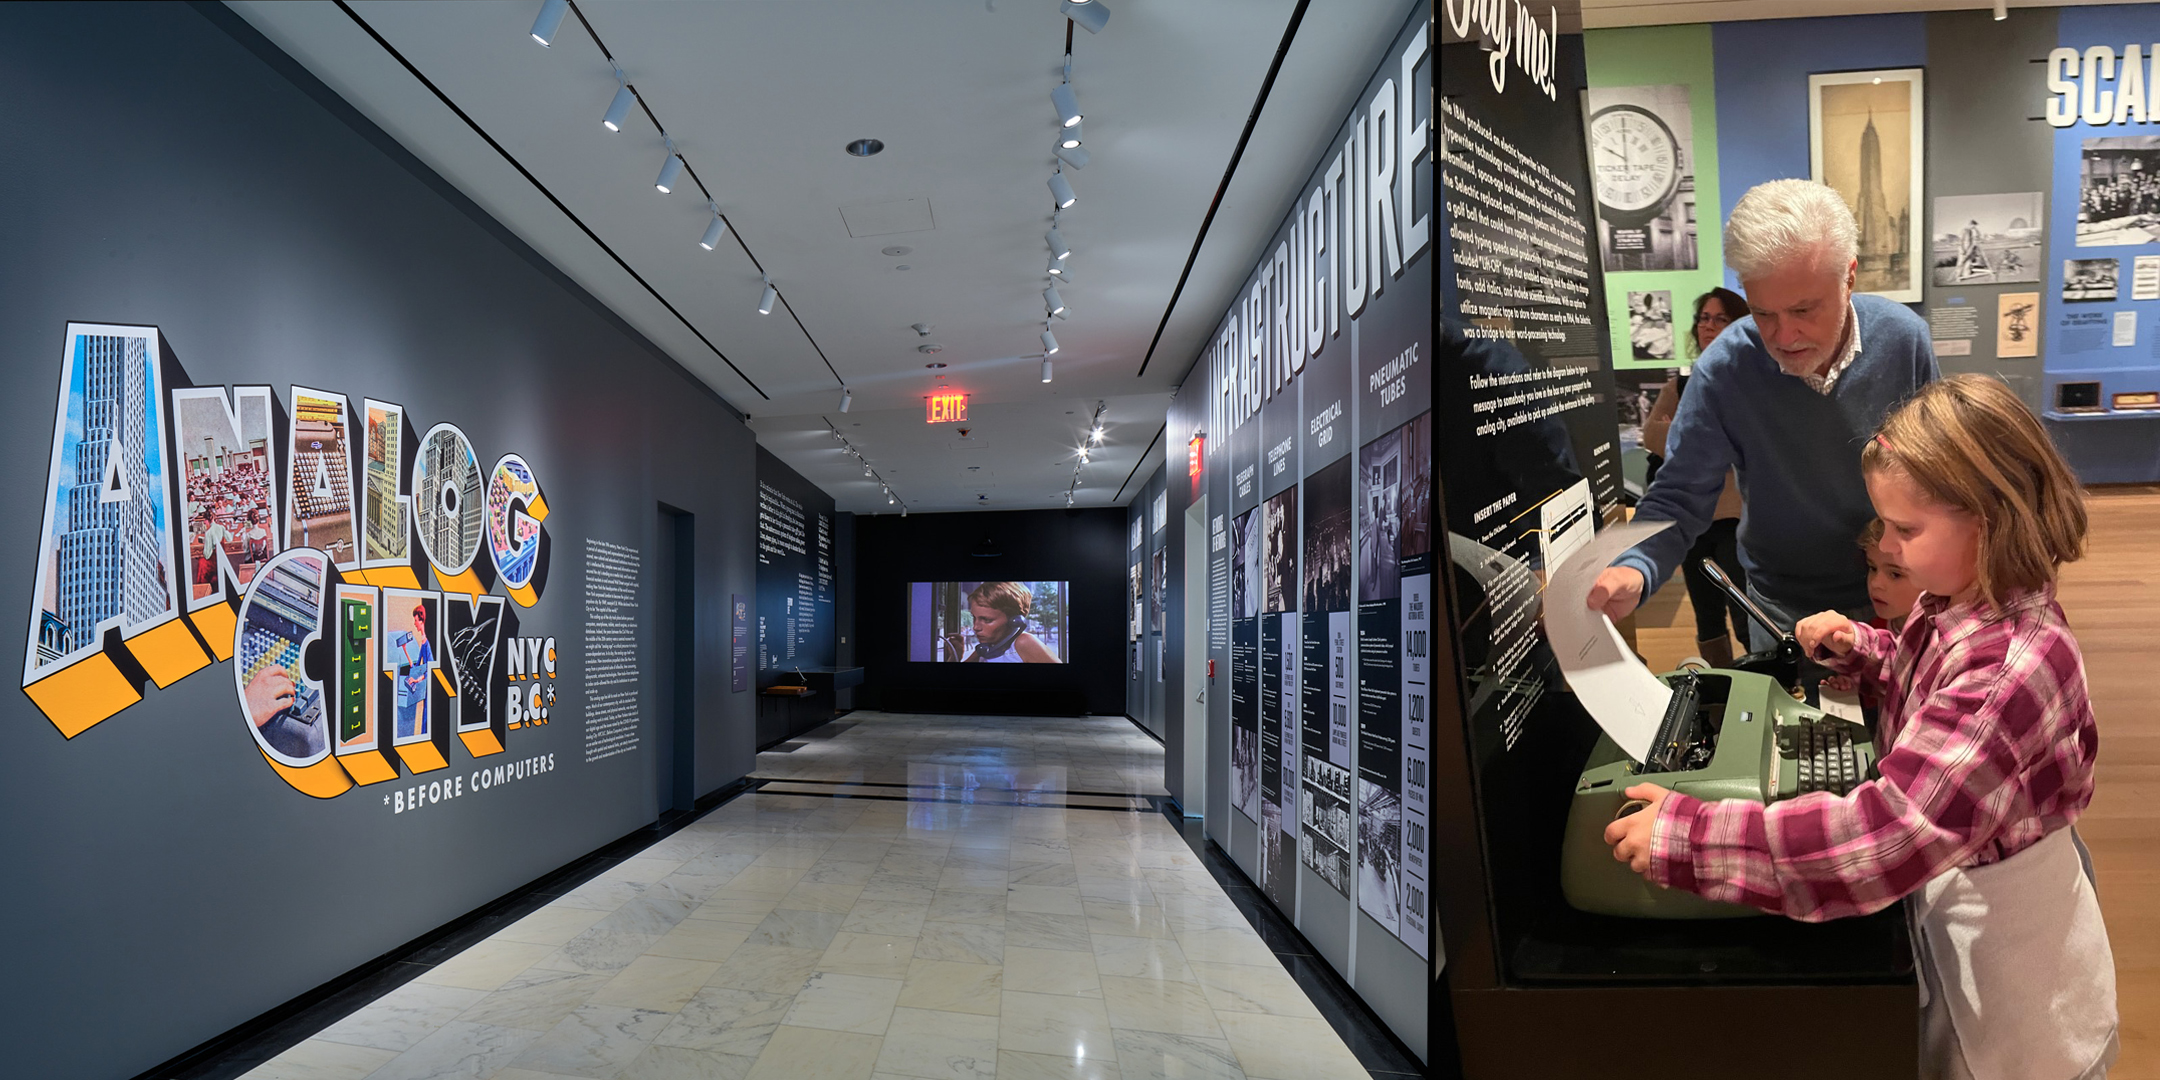 复合图像。 左边是进入模拟城展览走廊的装置图，墙上有标题处理。 右边是一位年长的先生帮助一位年轻女孩将纸送入打字机